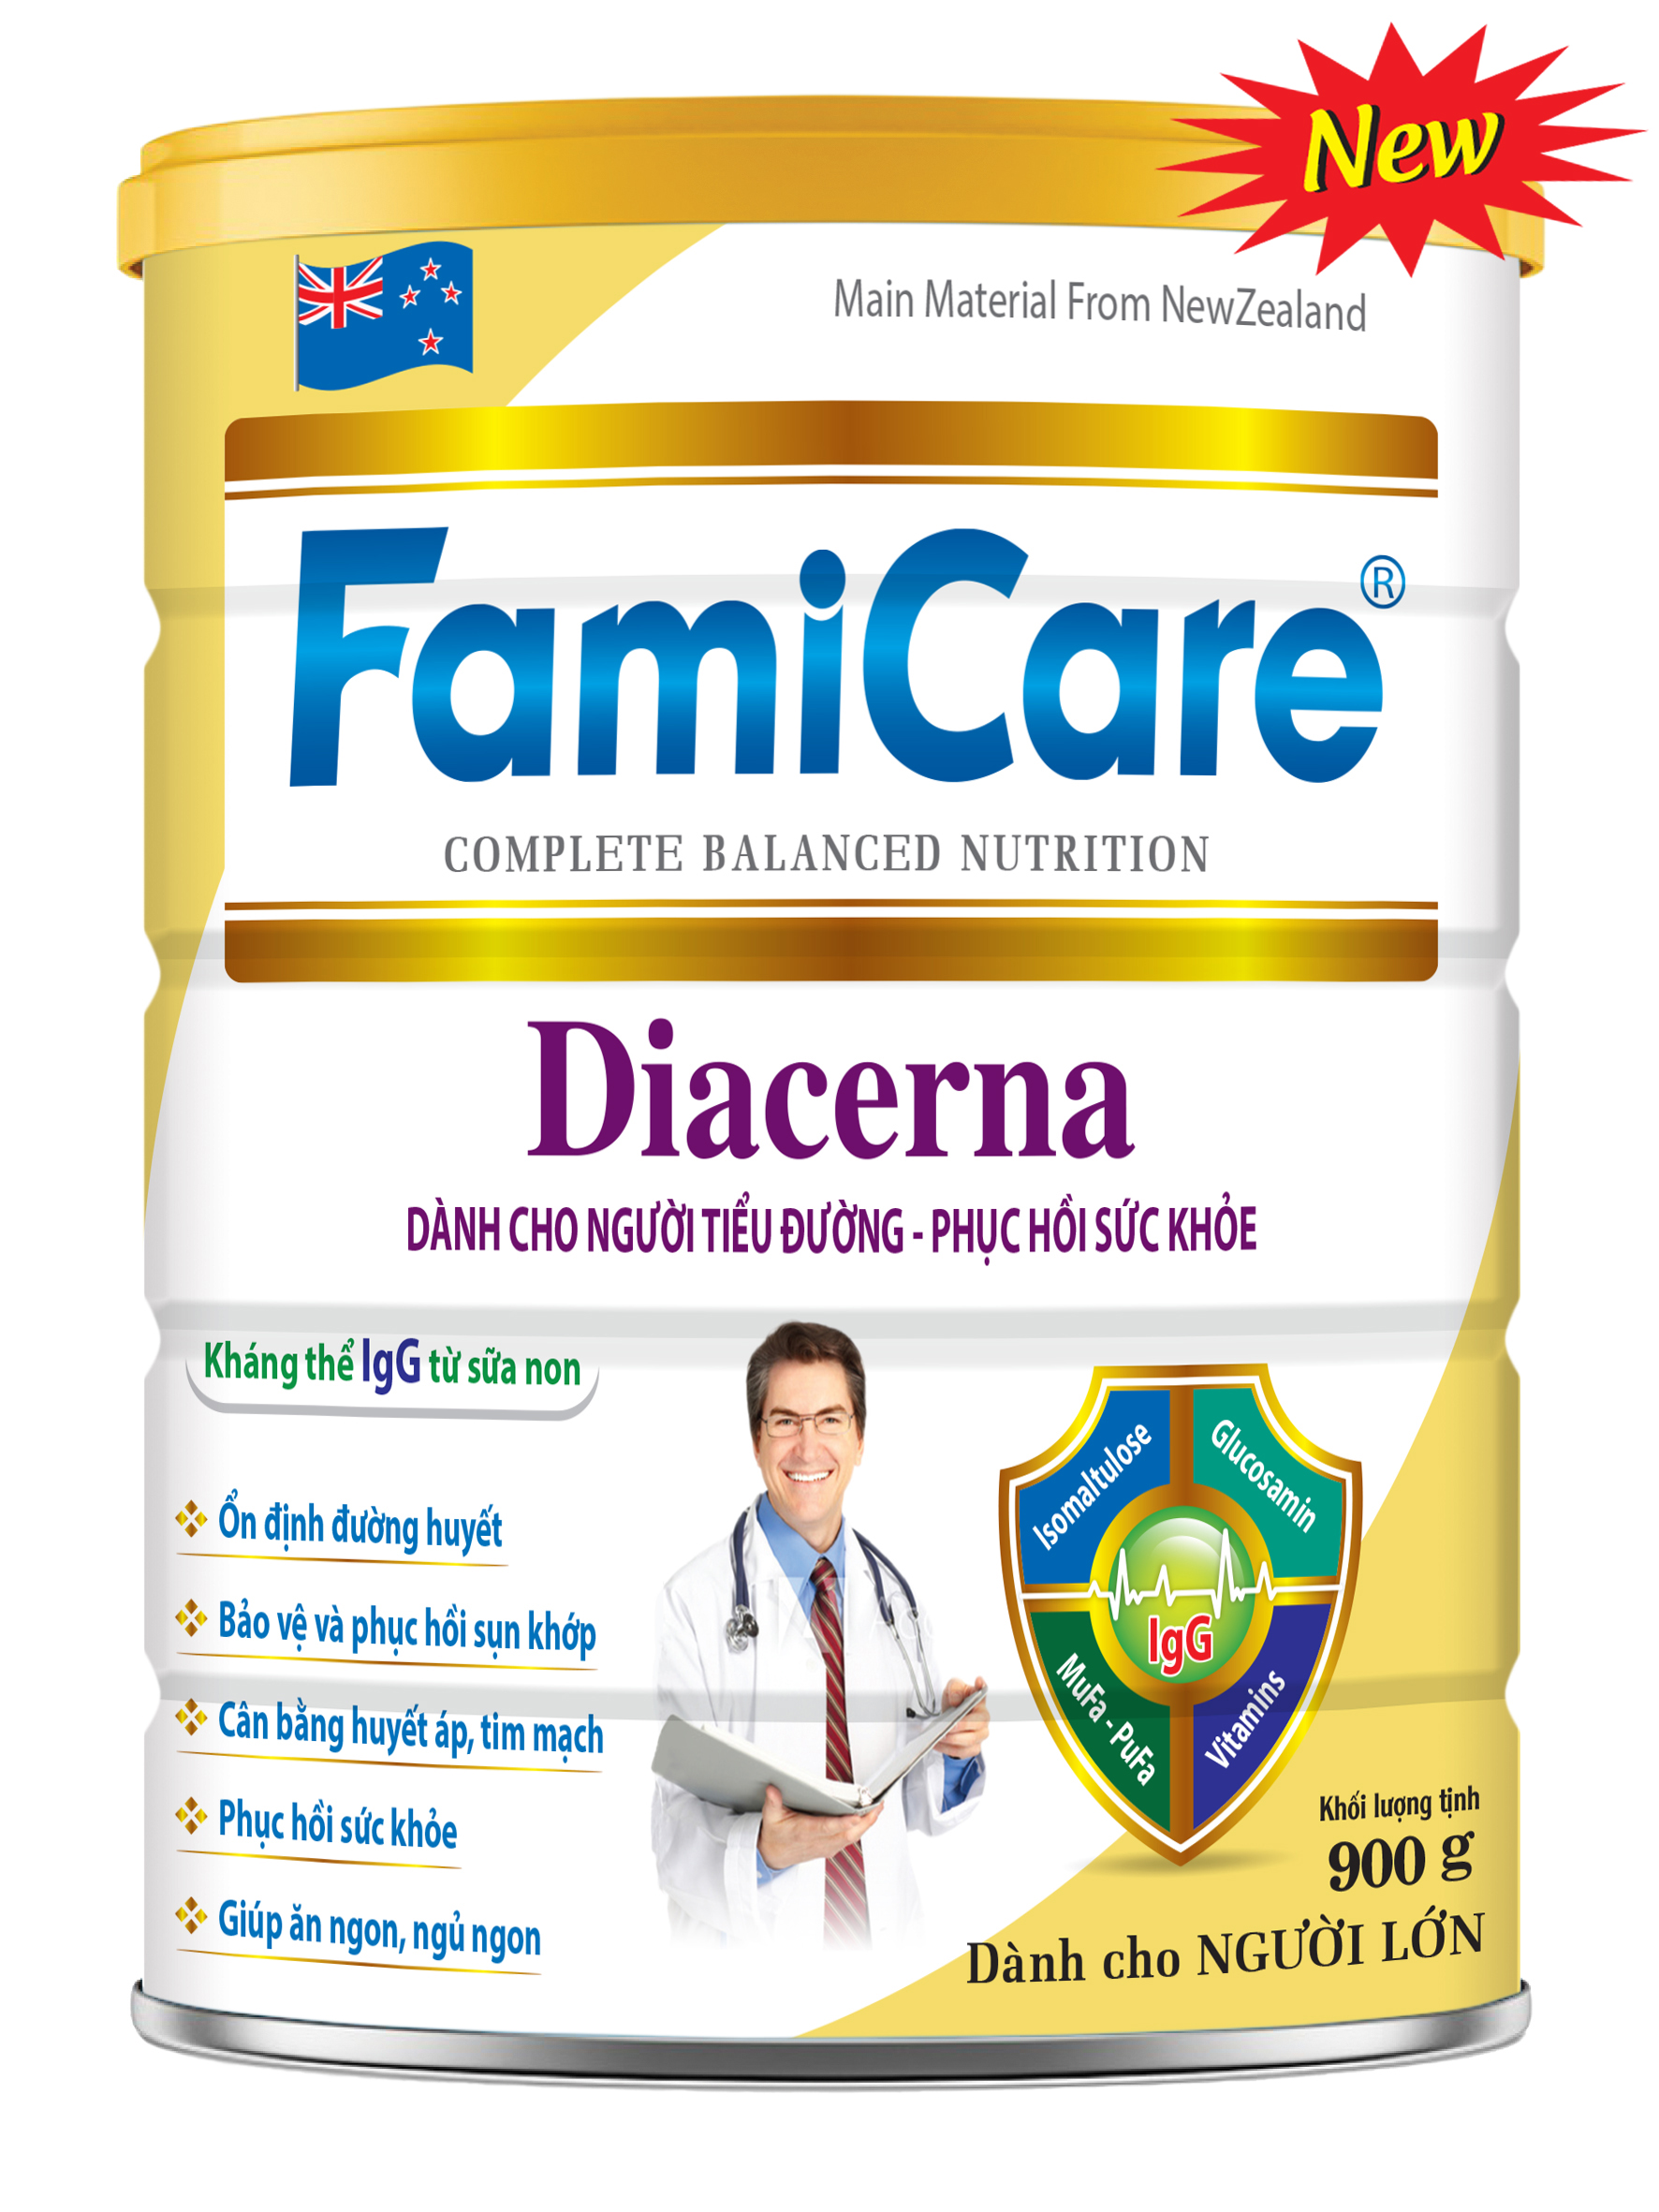 FamiCare Diacerna (New)